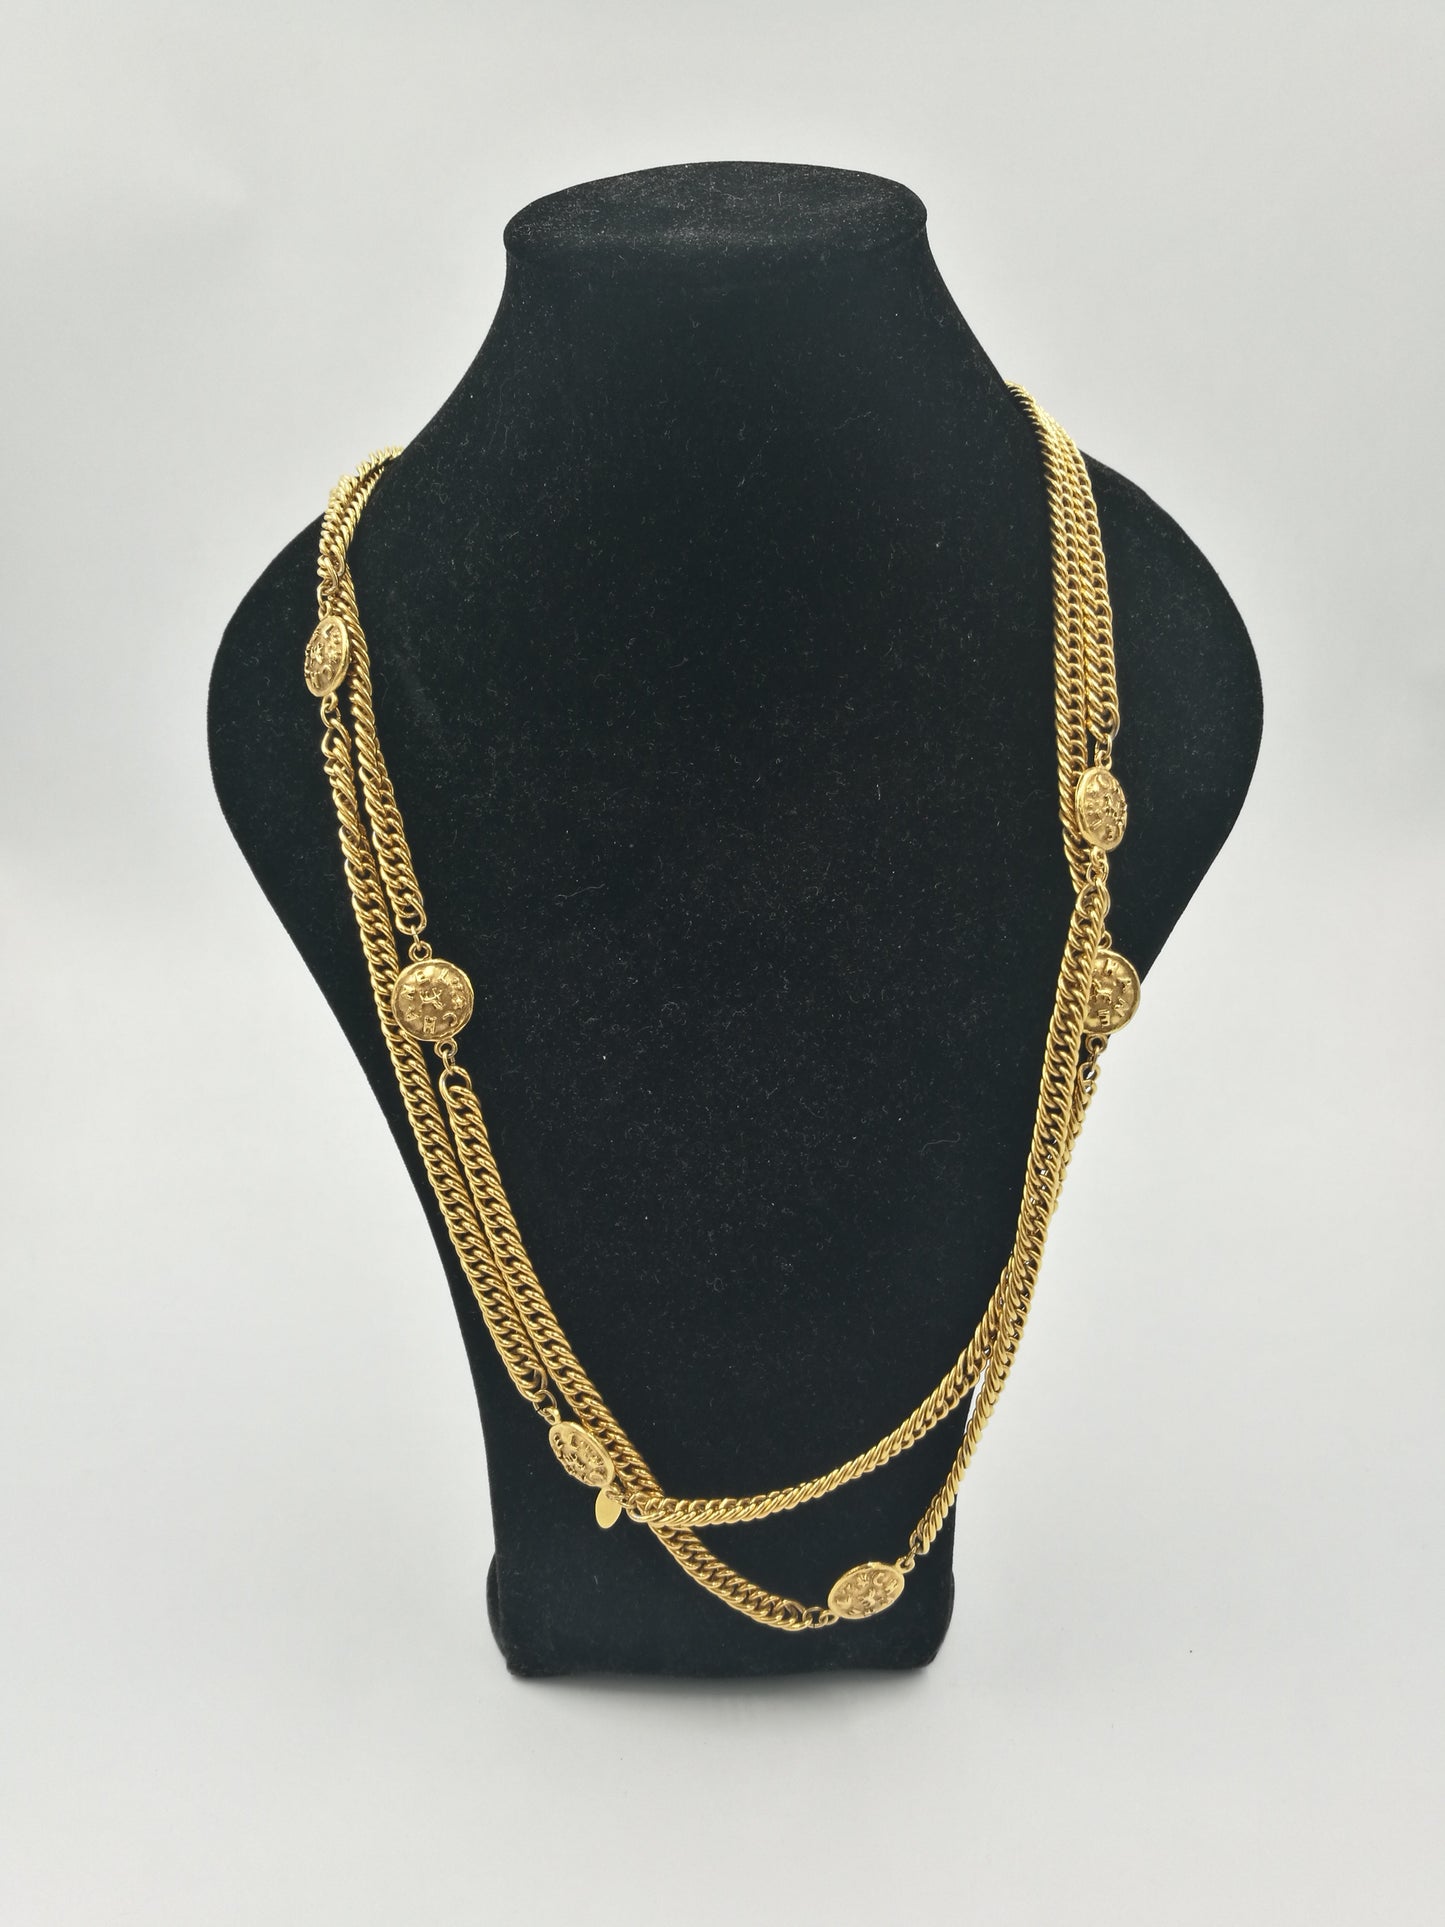 Chanel collana in metallo dorato